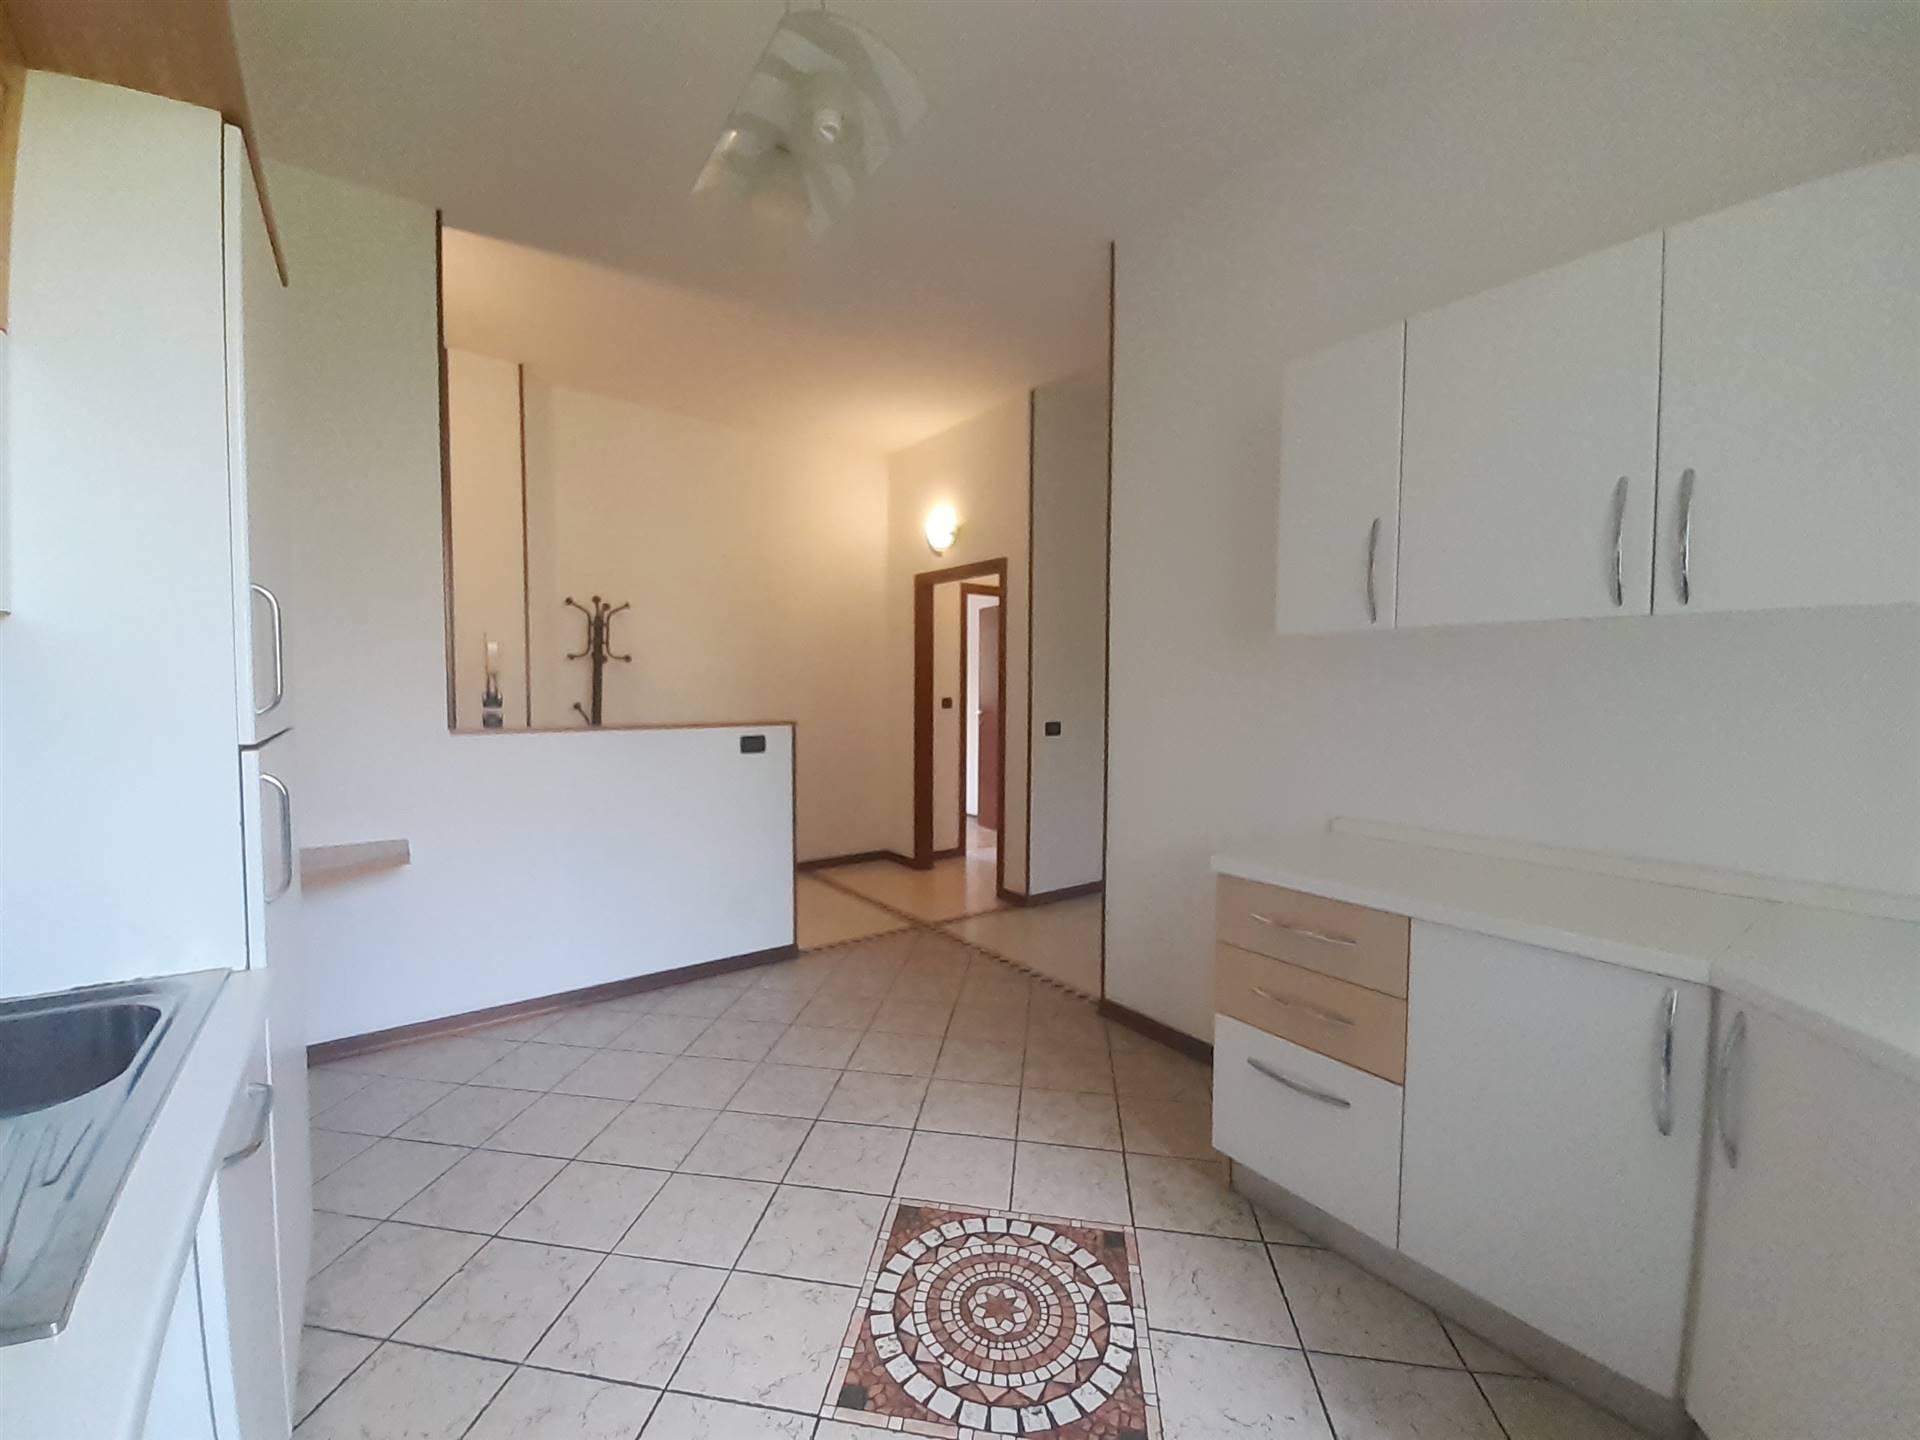 Appartamento in vendita a Casalecchio di Reno, 4 locali, zona Località: CENTRO, prezzo € 259.000 | PortaleAgenzieImmobiliari.it